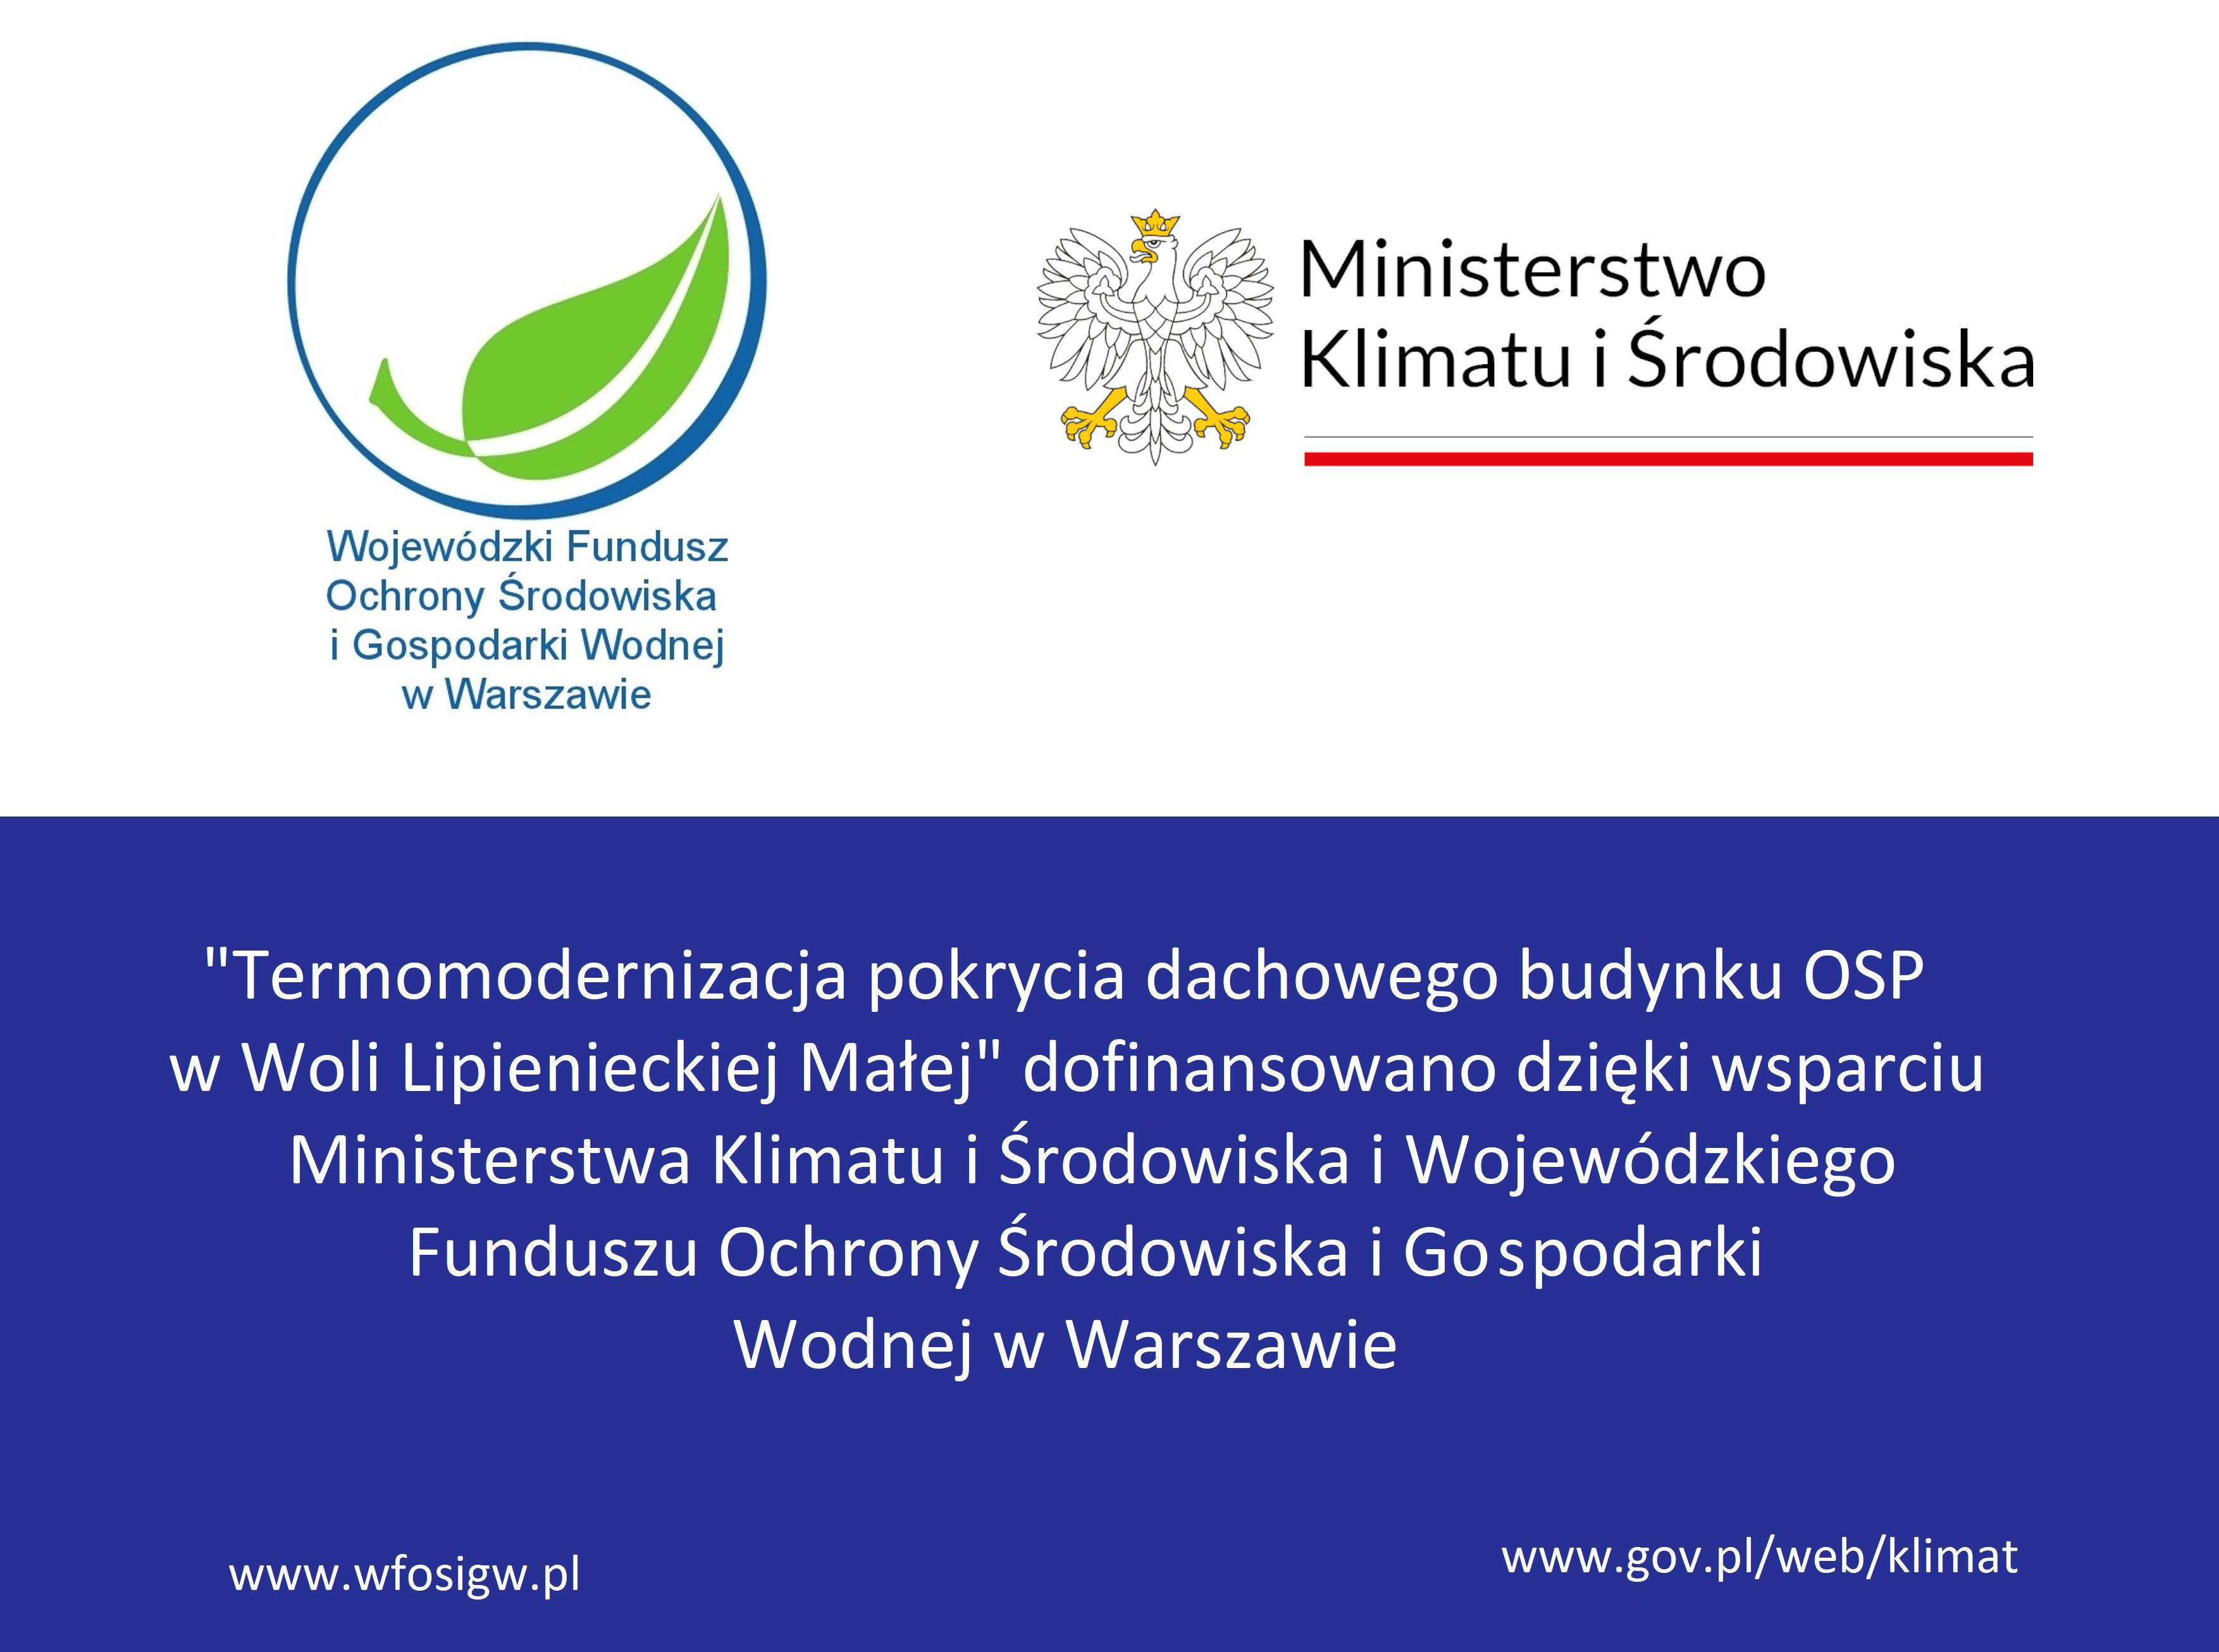 "Termomodernizacja pokrycia dachowego budynku OSP w Woli Lipienieckiej Małej" dofinansowano dzięki wsparciu Ministerstwa Klimatu i Środowiska i Wojewódzkiego Funduszu Ochrony Środowiska i Gospodarki Wodnej w Warszawie